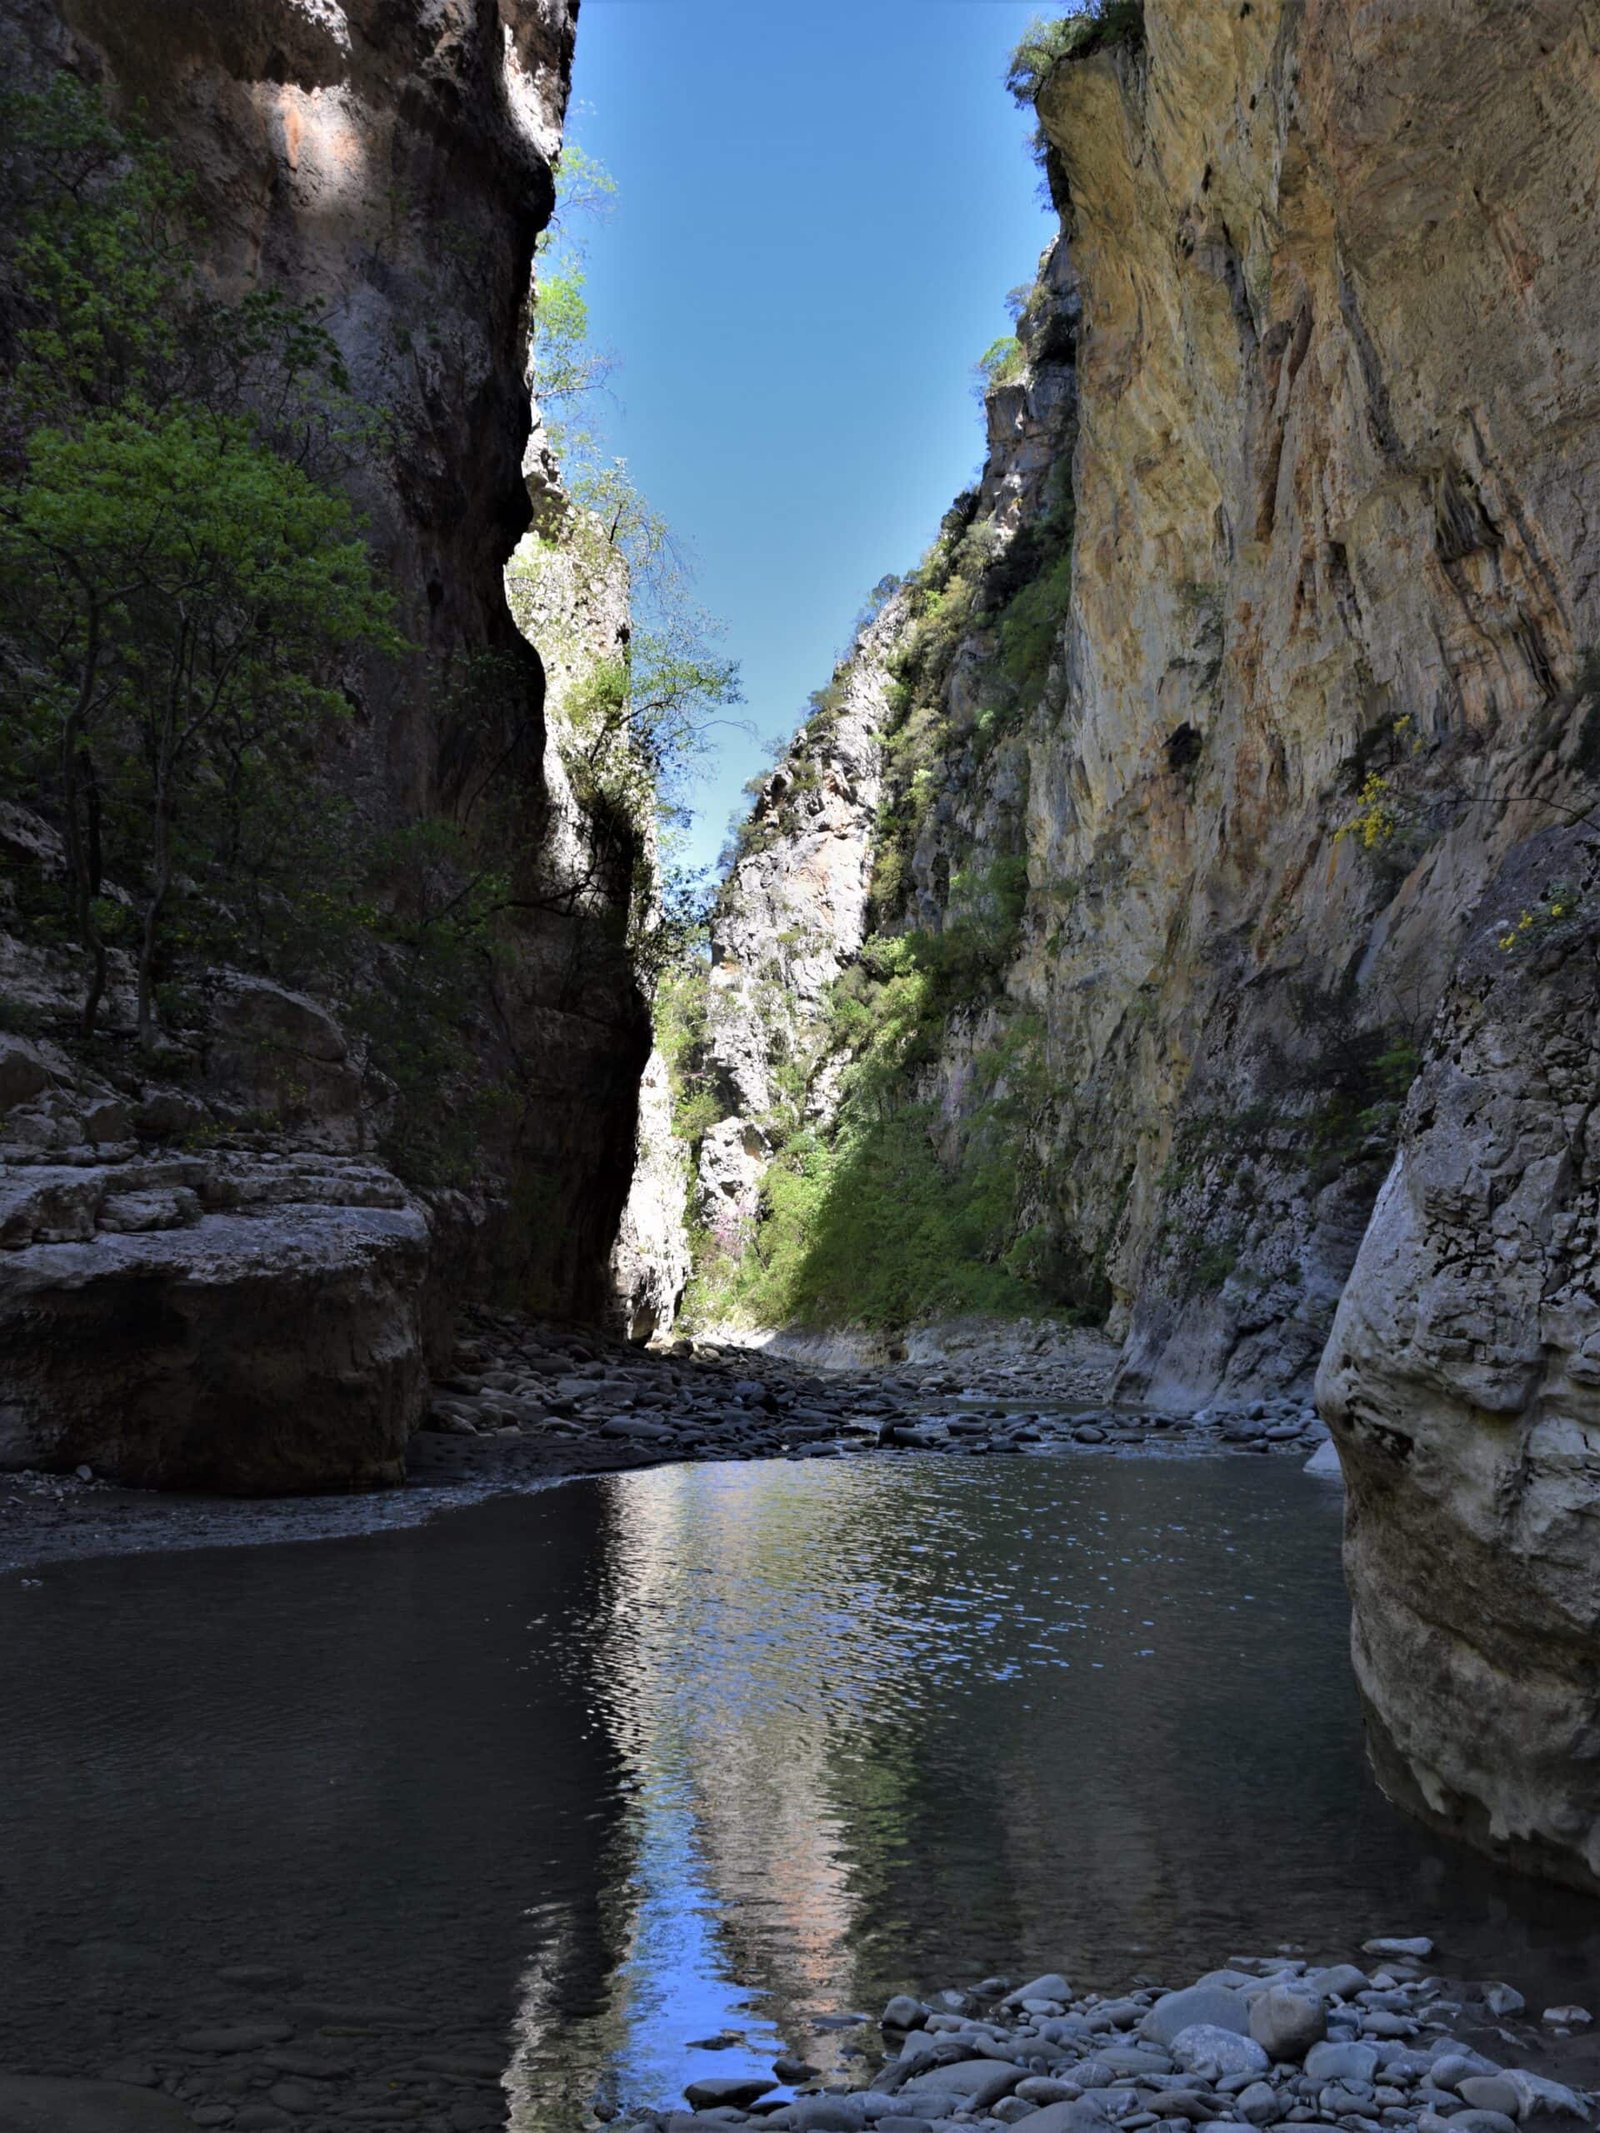 a river runs through a narrow canyon